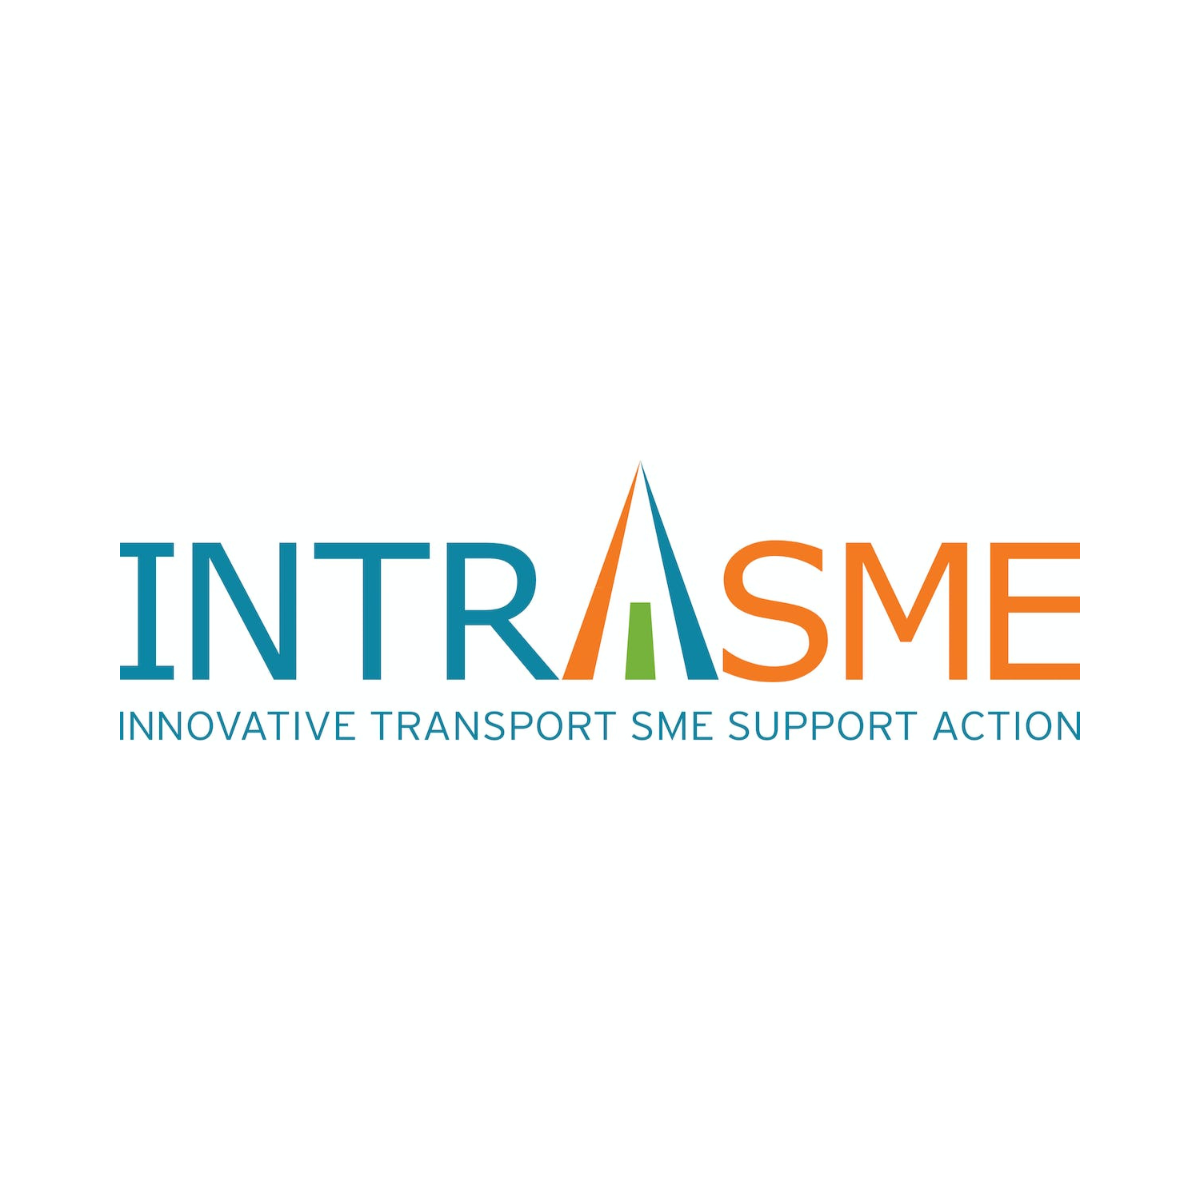 INTRASME - Innovative Transport SME Support Action